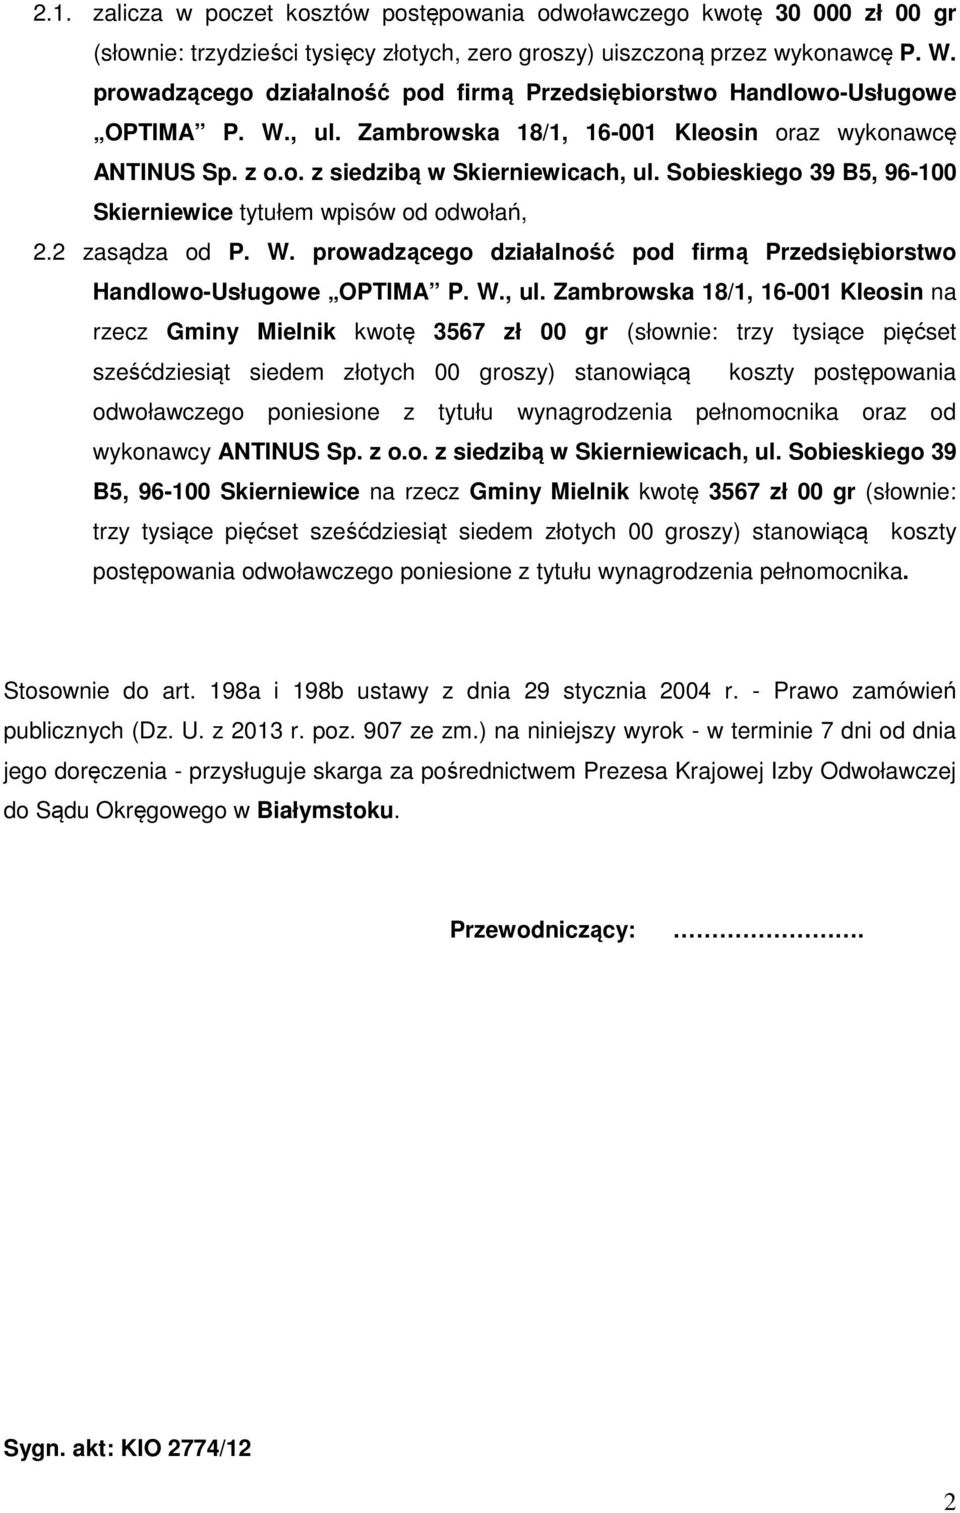 Sobieskiego 39 B5, 96-100 Skierniewice tytułem wpisów od odwołań, 2.2 zasądza od P. W. prowadzącego działalność pod firmą Przedsiębiorstwo Handlowo-Usługowe OPTIMA P. W., ul.